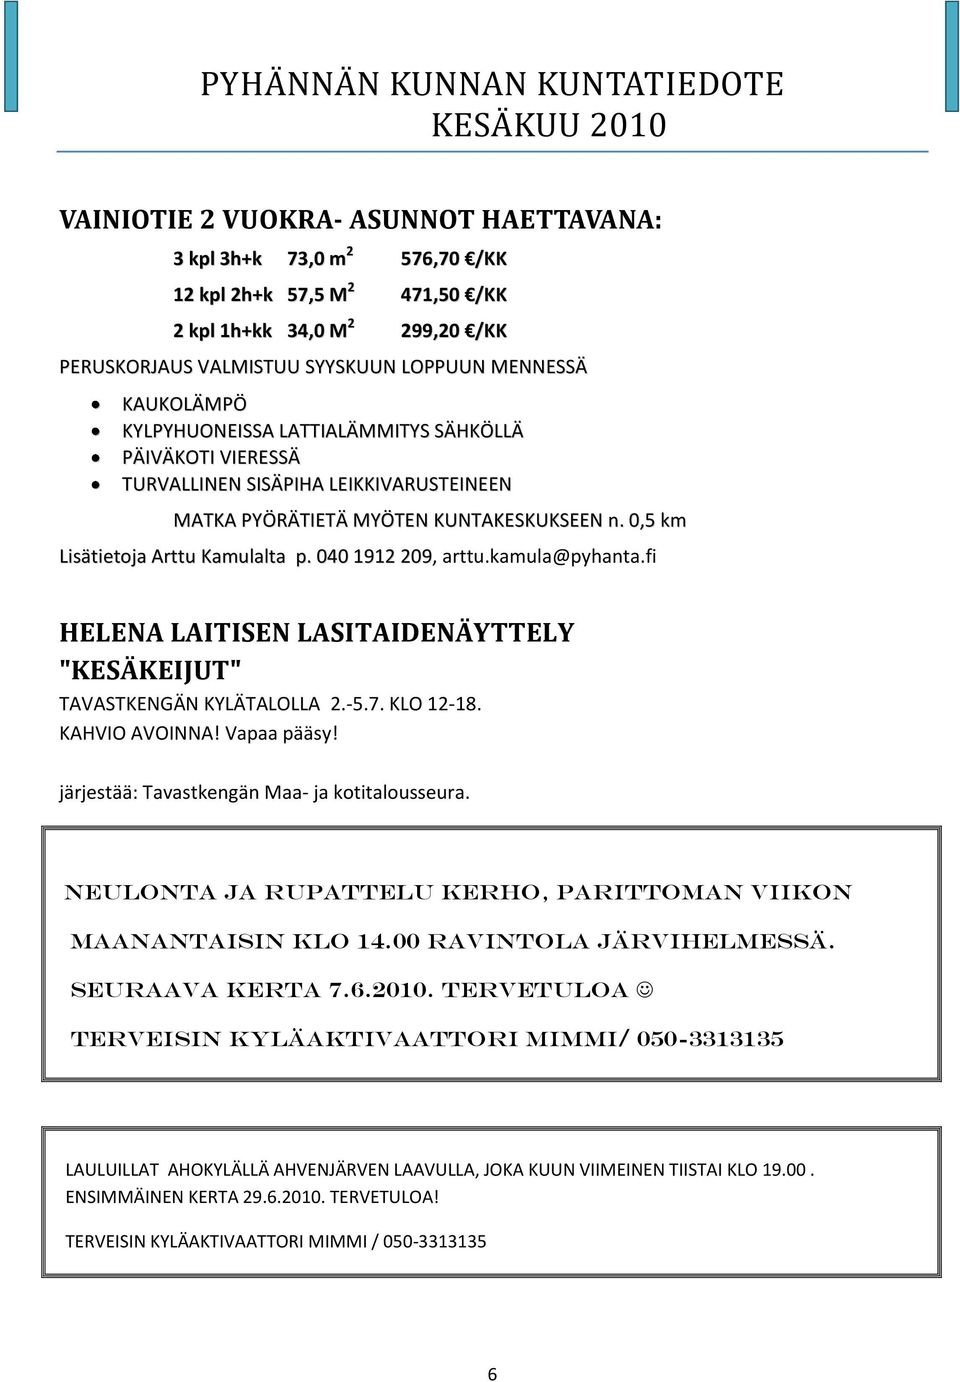 kamula@pyhanta.fi HELENA LAITISEN LASITAIDENÄYTTELY "KESÄKEIJUT" TAVASTKENGÄN KYLÄTALOLLA 2.-5.7. KLO 12-18. KAHVIO AVOINNA! Vapaa pääsy! järjestää: Tavastkengän Maa- ja kotitalousseura.